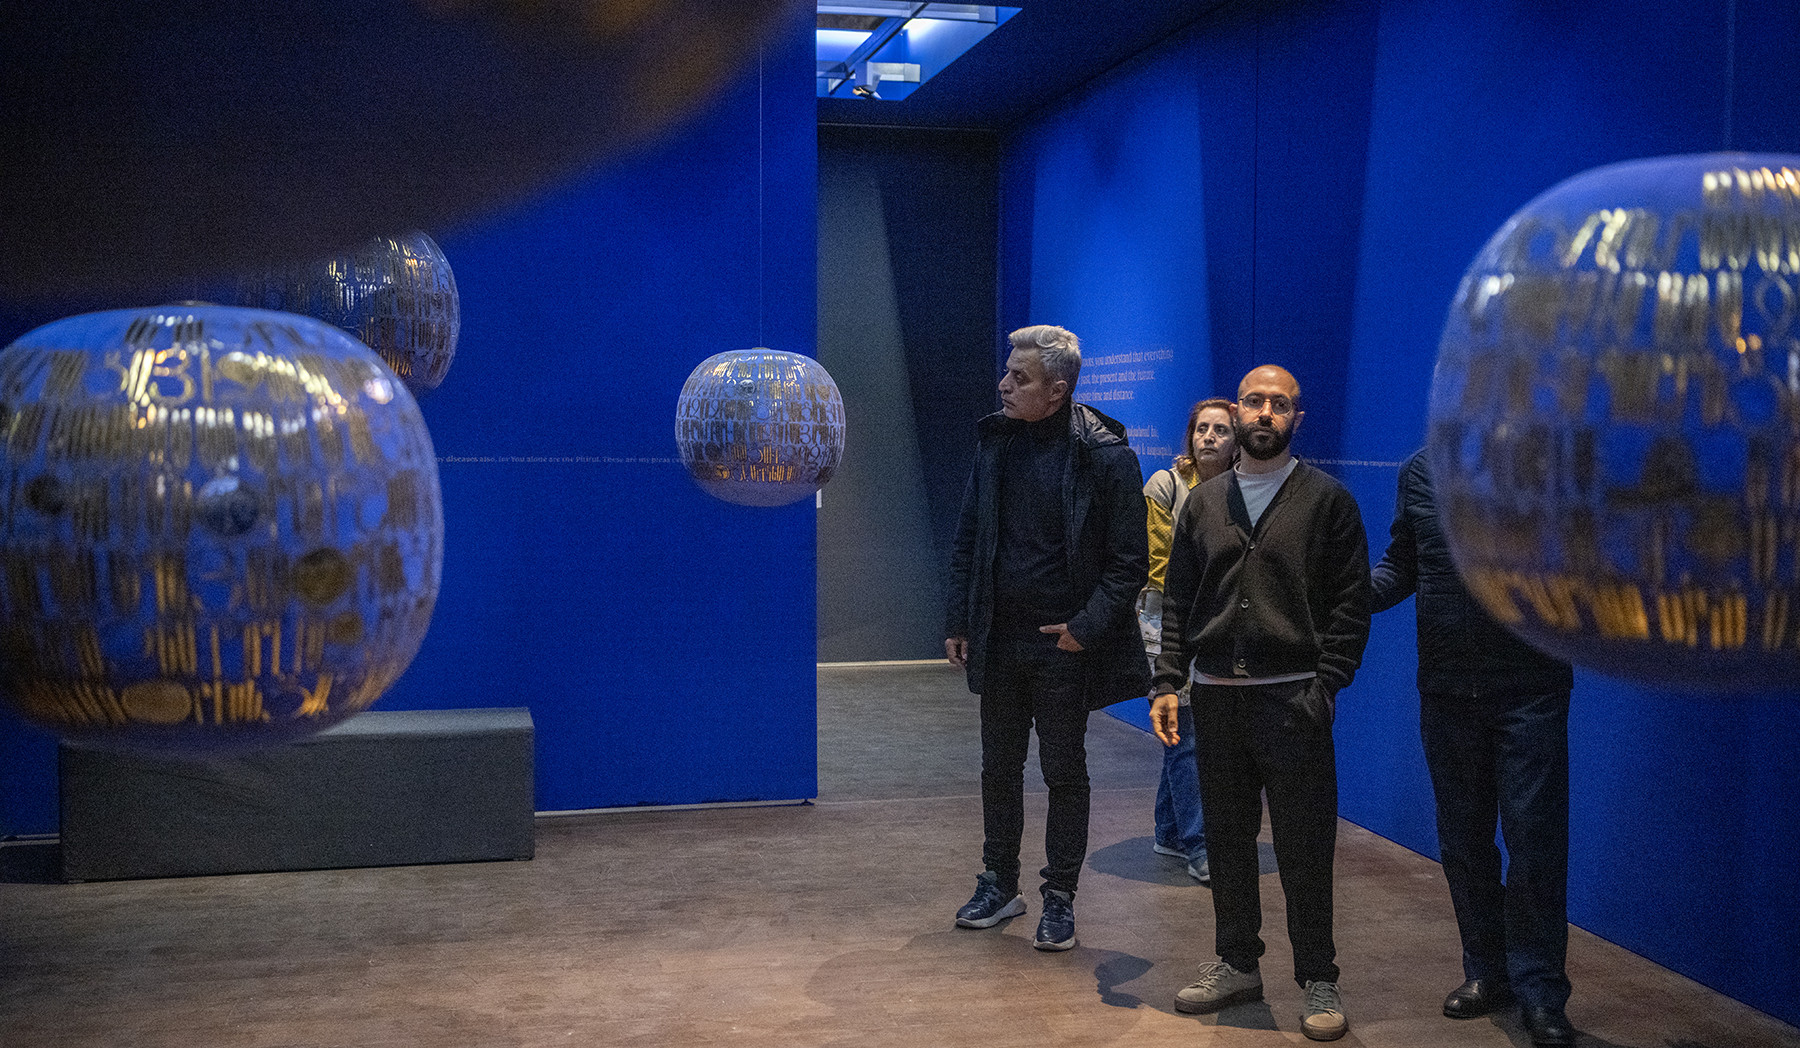 Վենետիկի արվեստի միջազգային 60-րդ բիենալեին Հայաստանը կներկայանա պաշտոնական տաղավարով